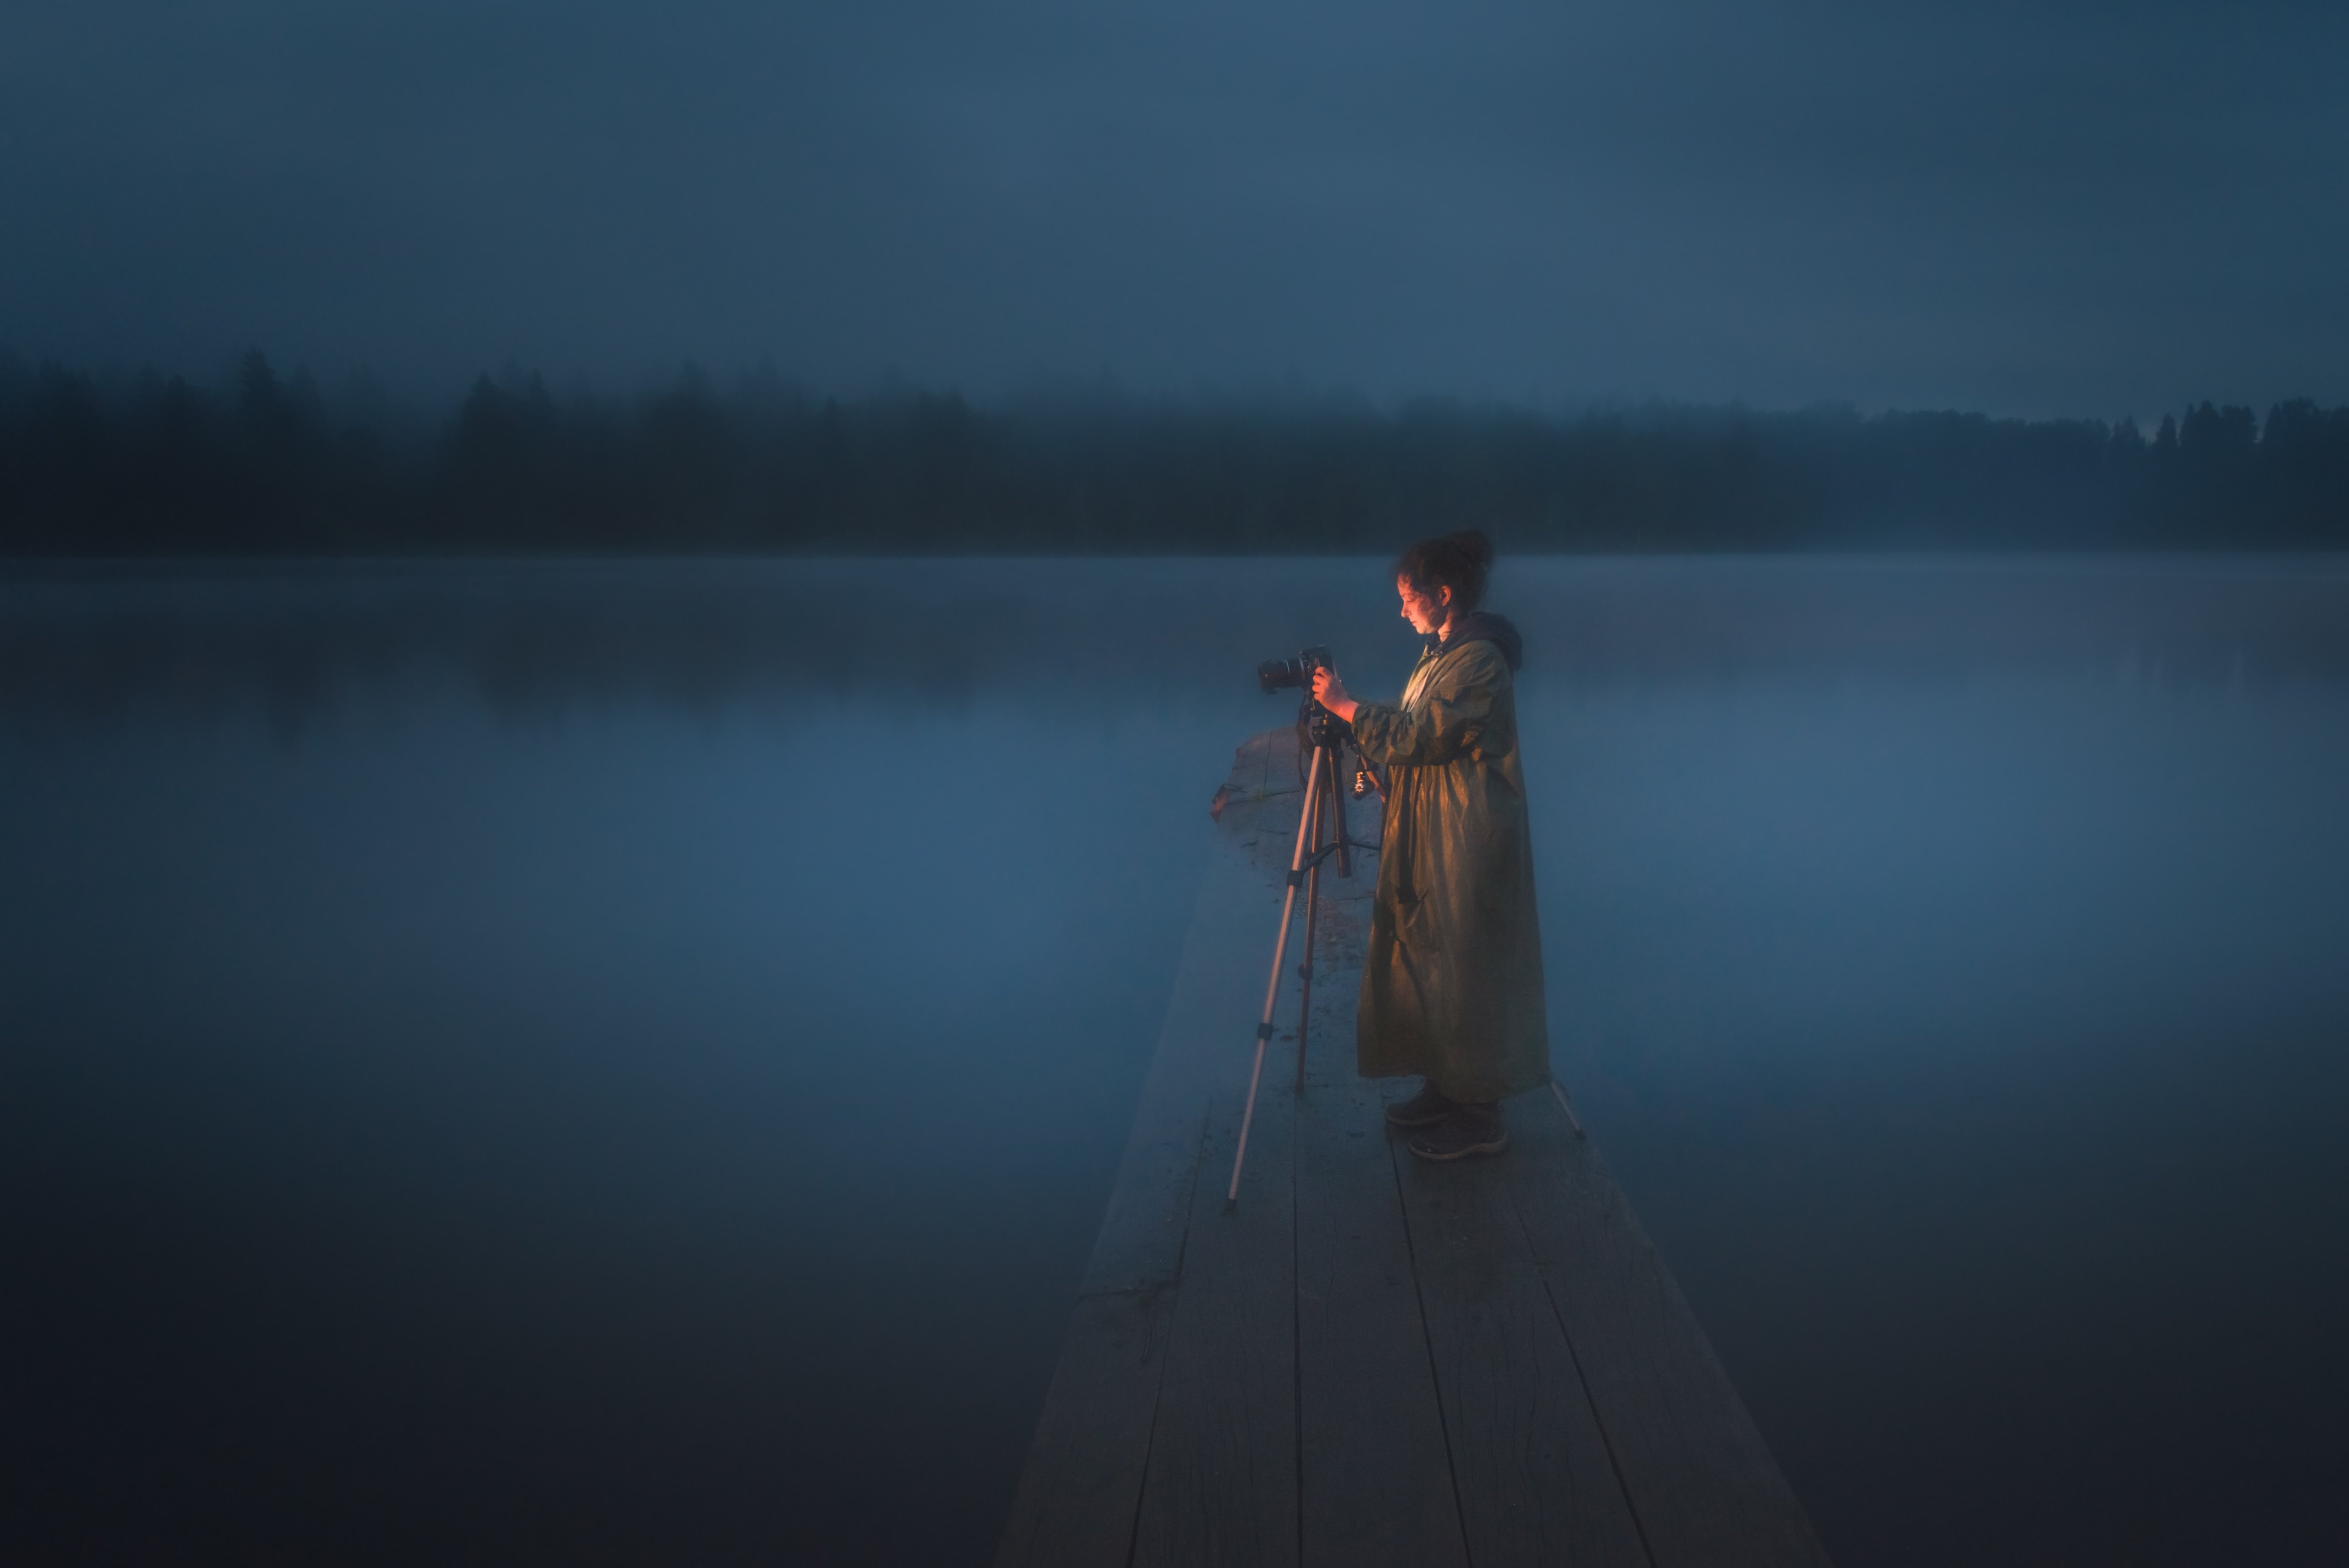 #алтай #салаир #салаирскийкряж #longexposure #night #woman #landscape #pond #mist #haze #fog #photographer #altaikrai #salair #water #night #пейзаж #женщина #модель #ночь #фотограф #magic, Денис Соломахин